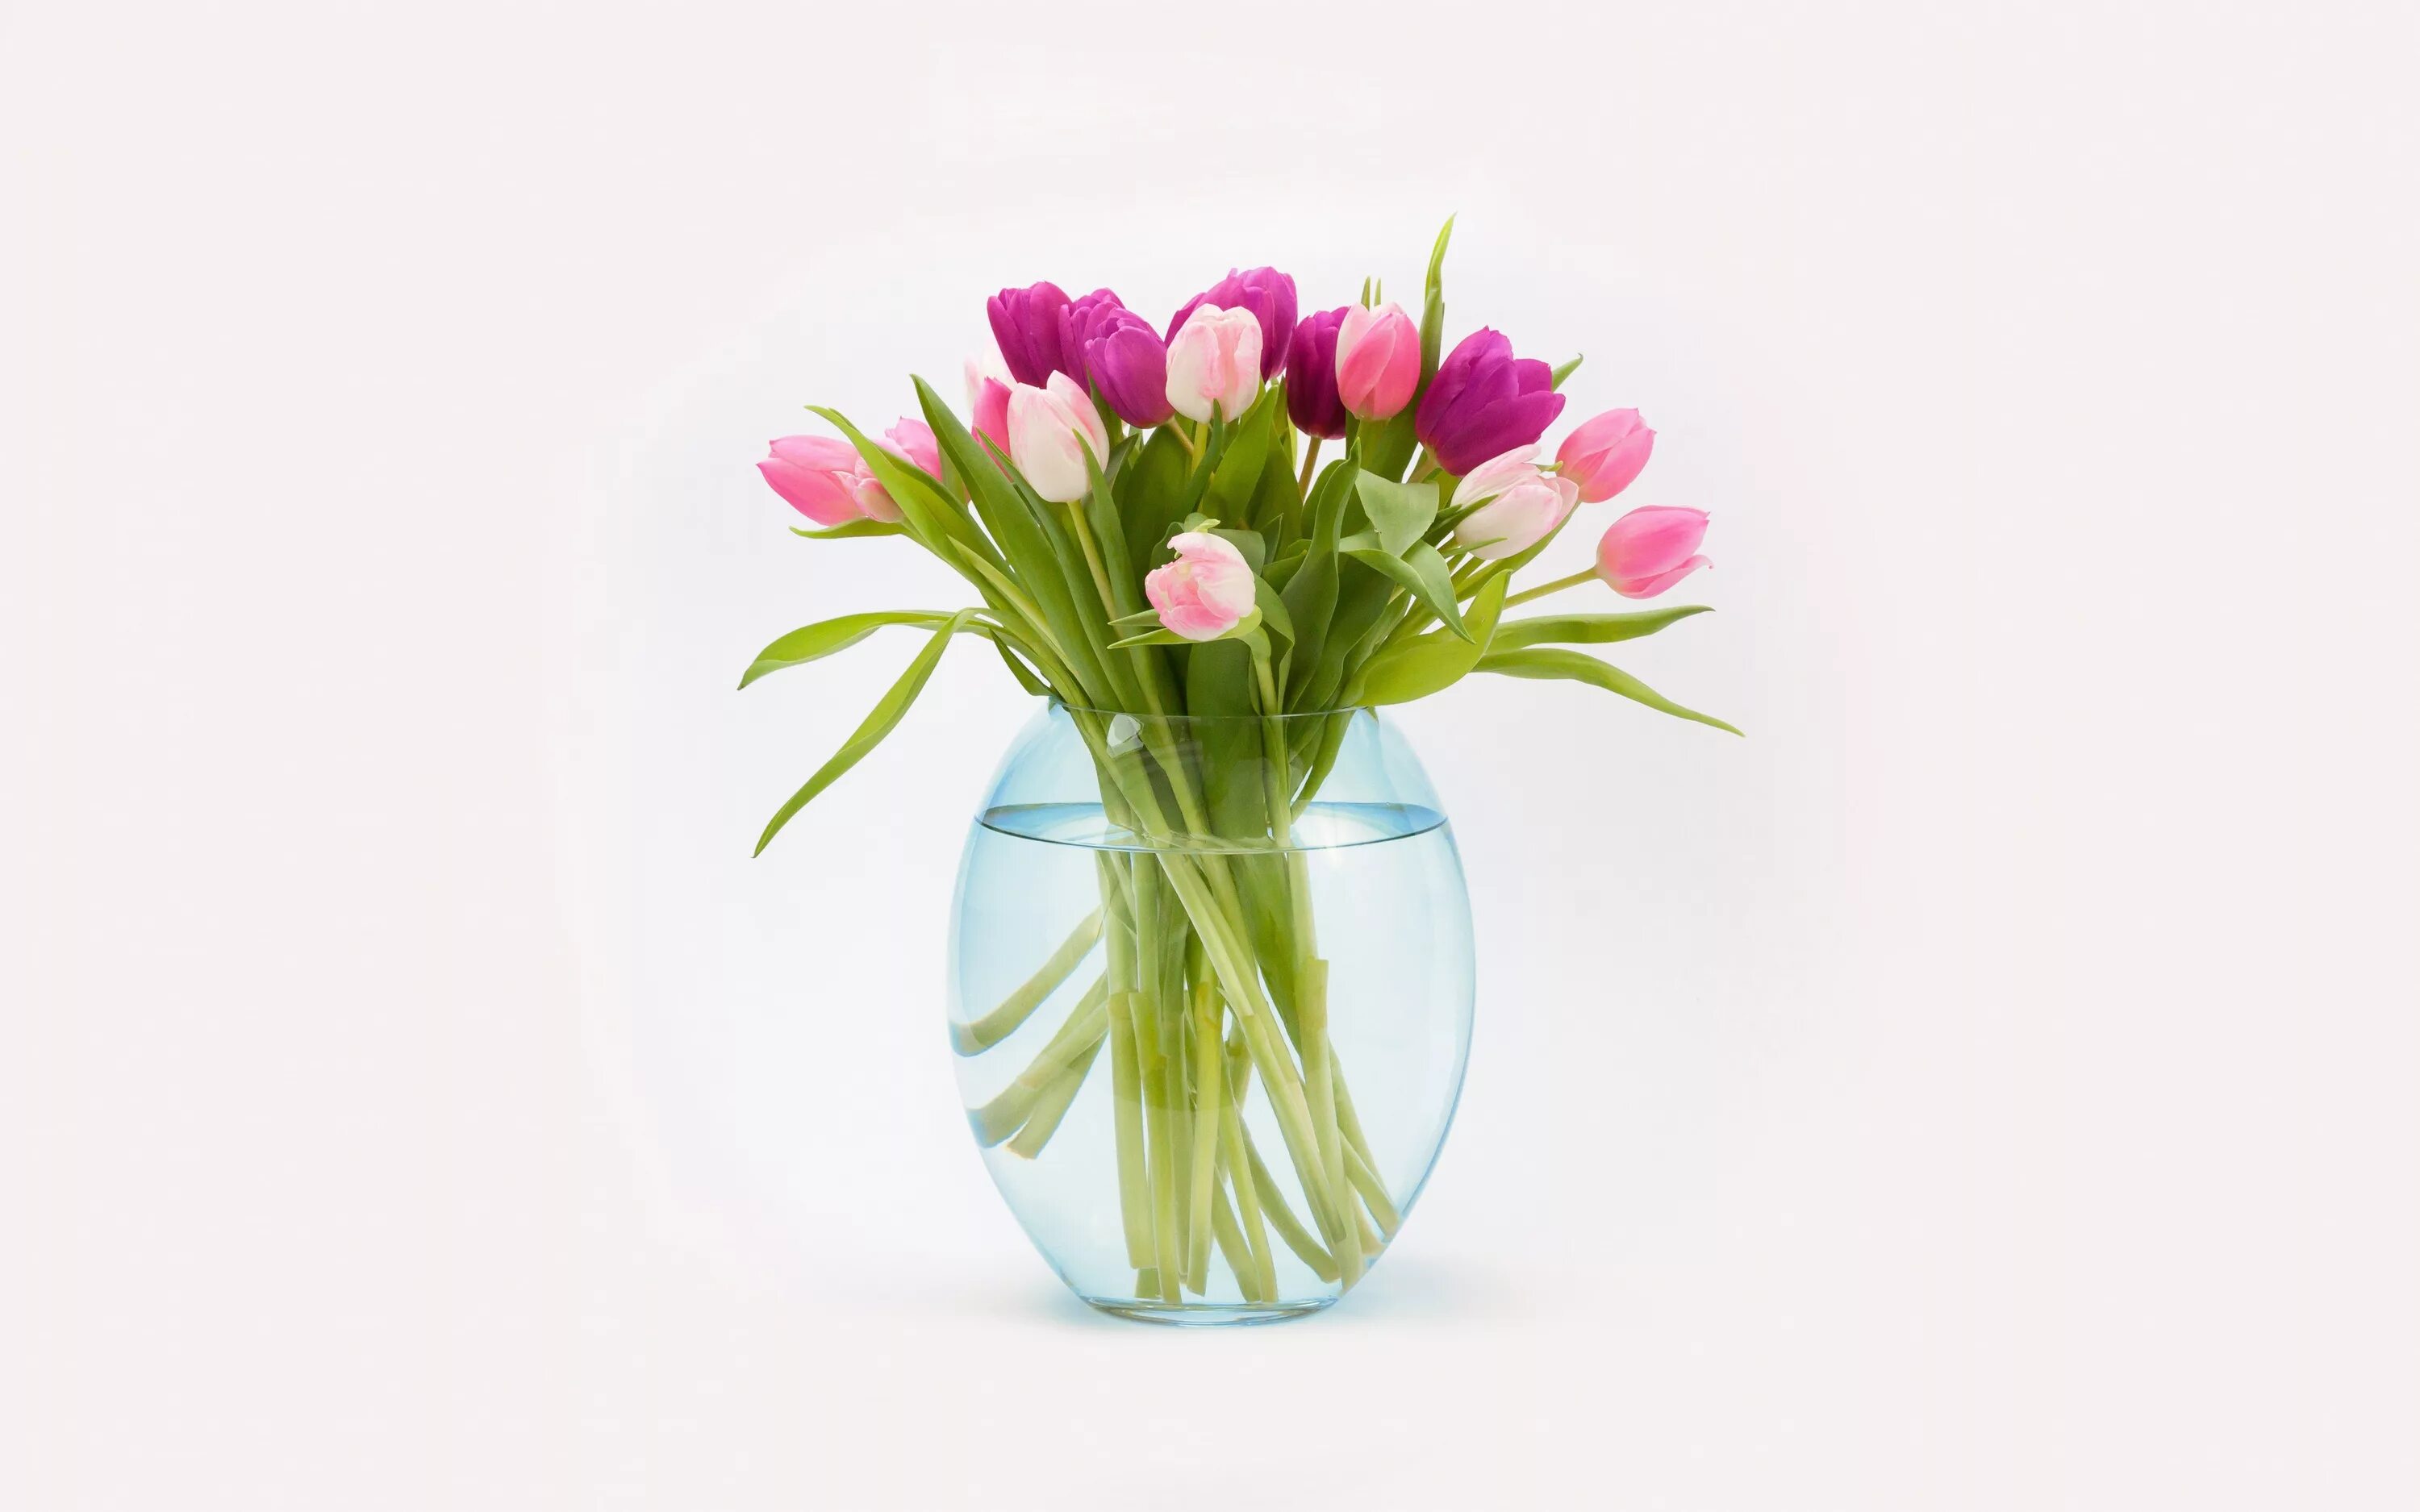 Цветы в прозрачной вазе. Букеты в вазах. Ваза с тюльпанами. Стильные весенние букеты.